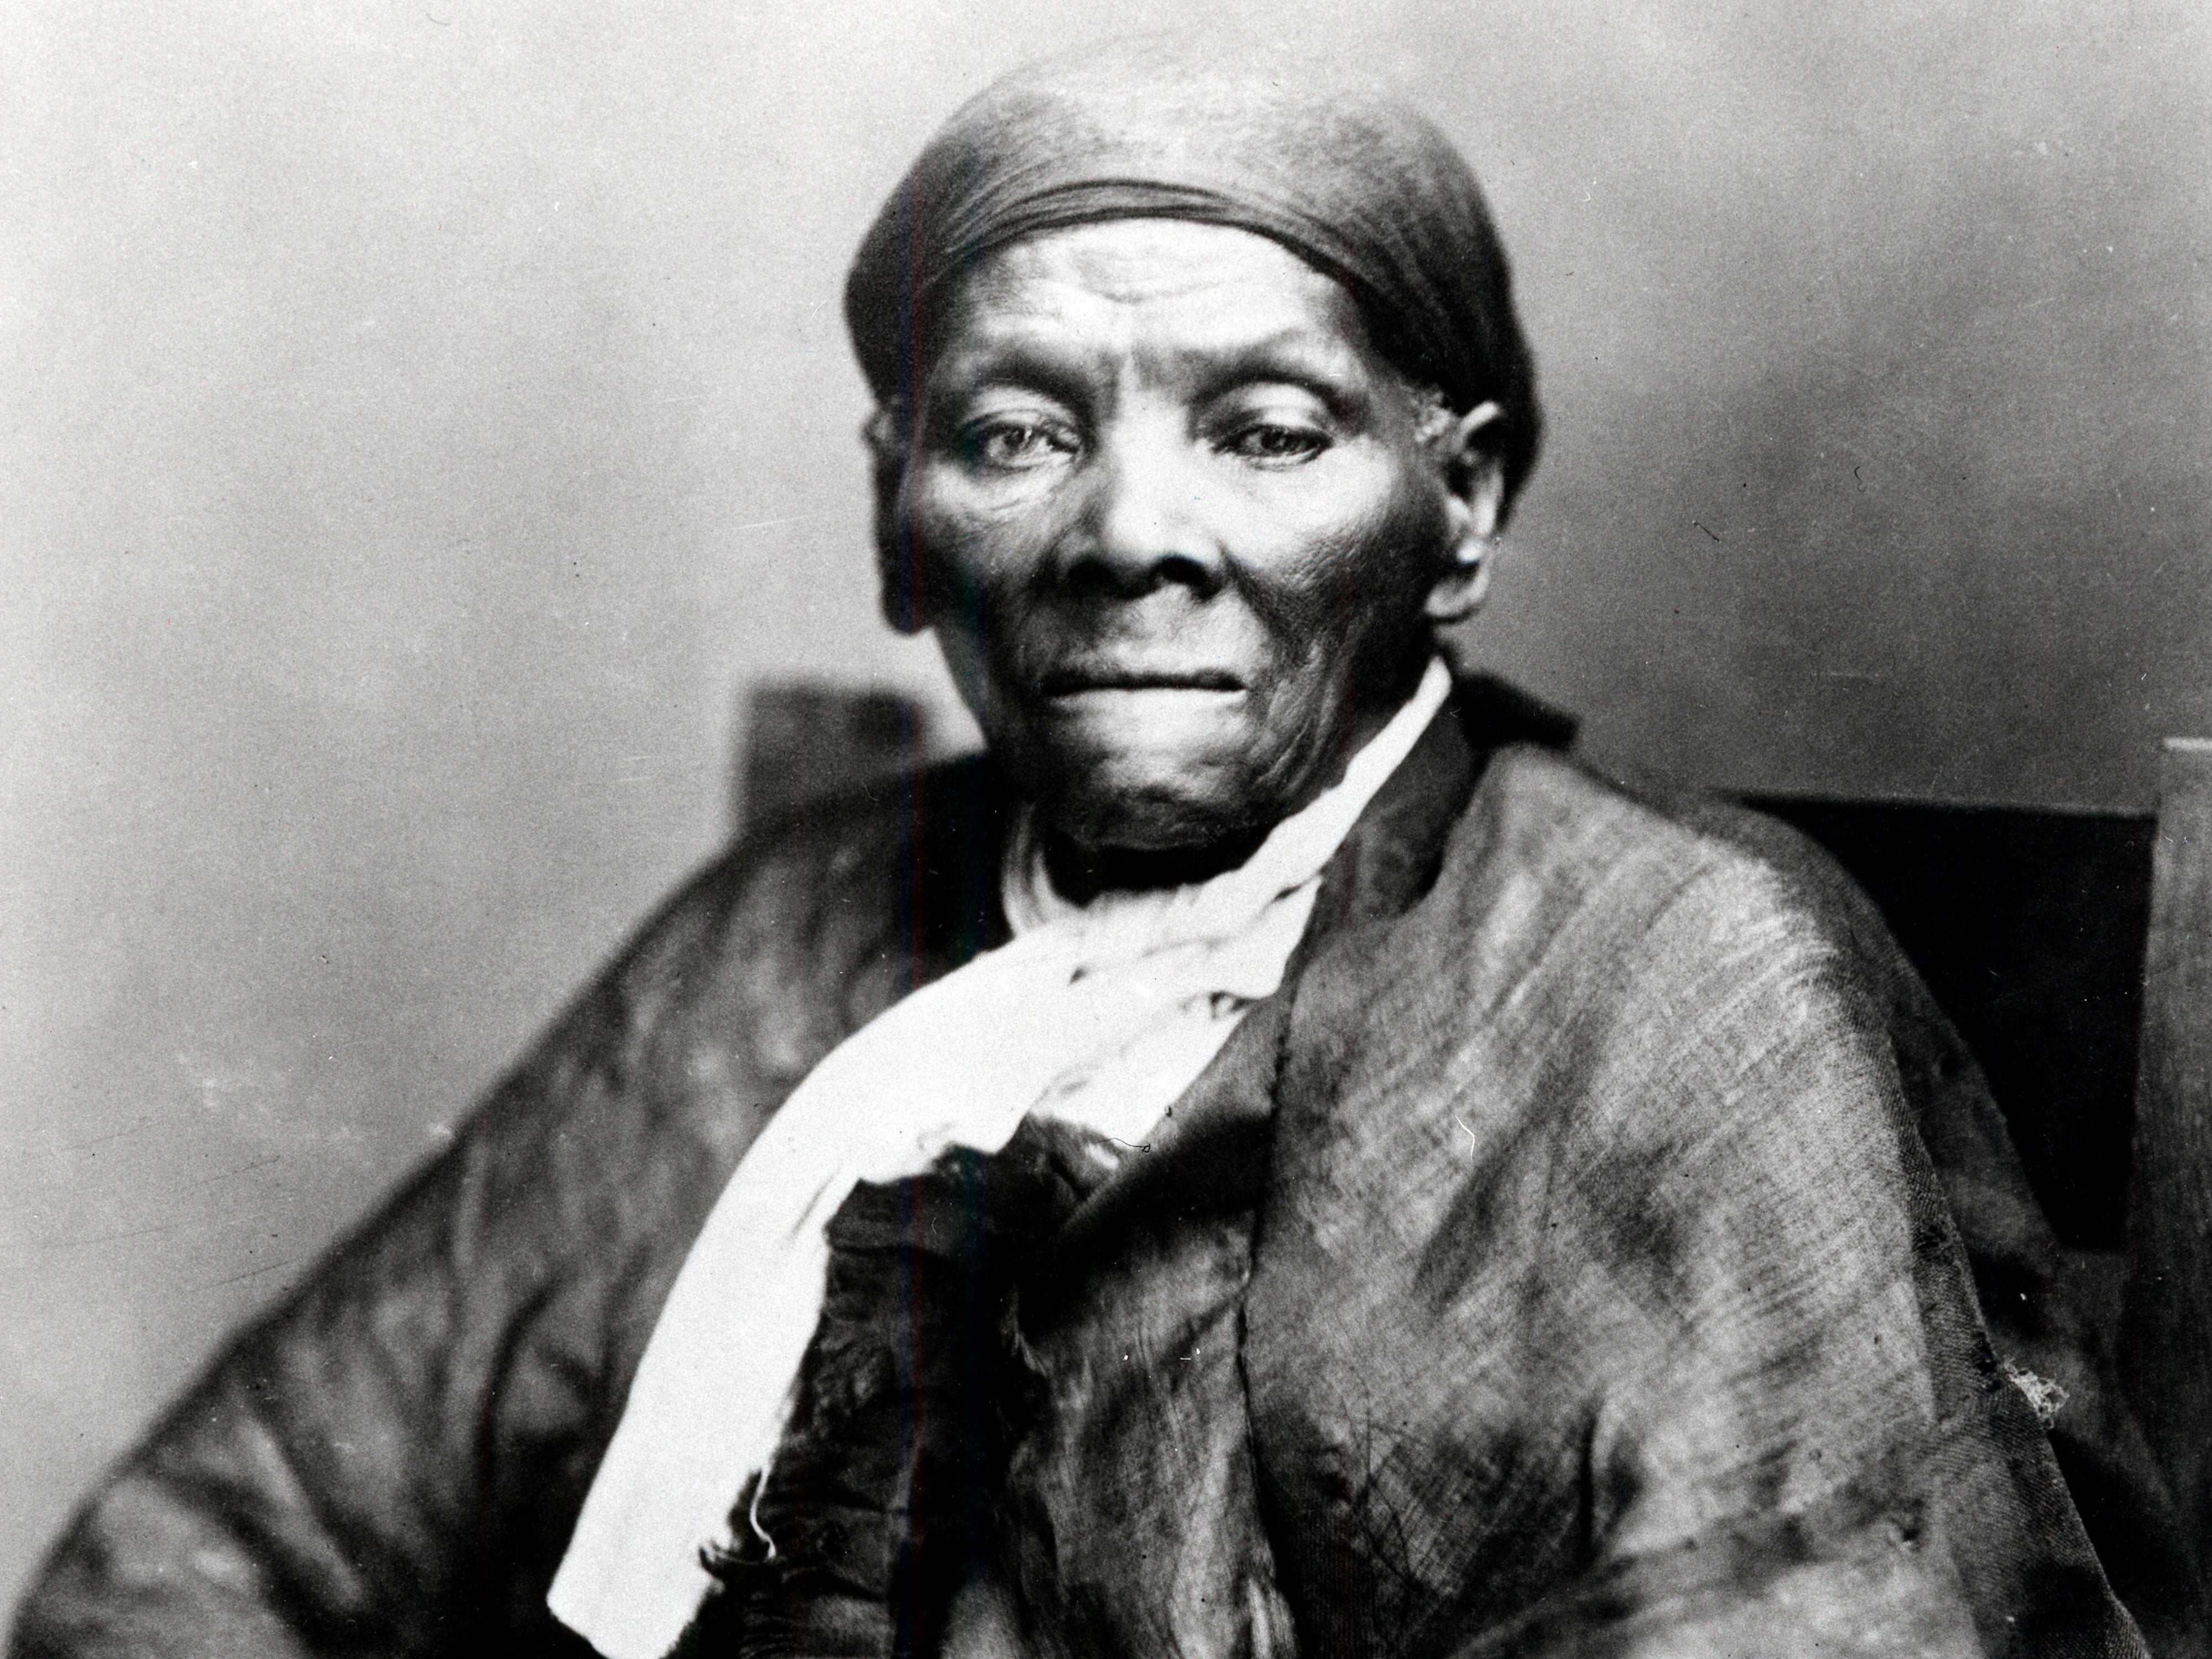  Harriet Tubman $20 Bill Design Surfaced This Week